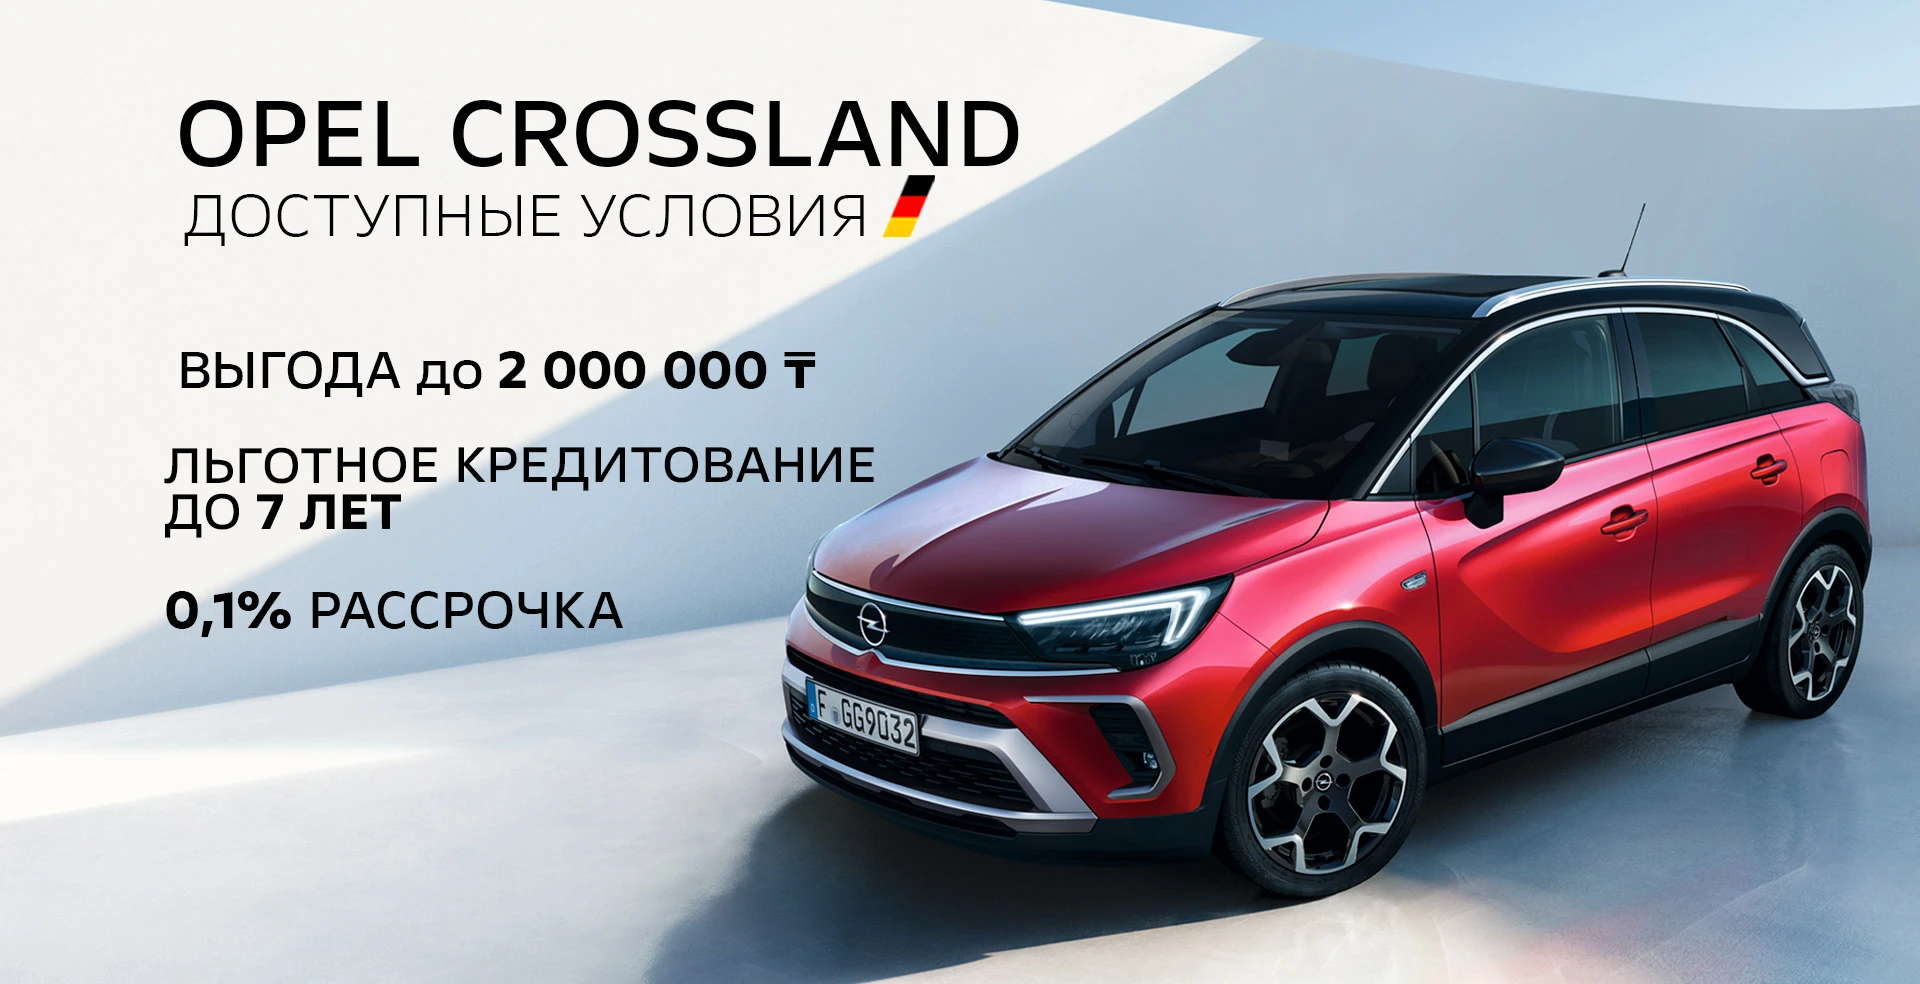 Выгодное кредитование Opel Crossland!